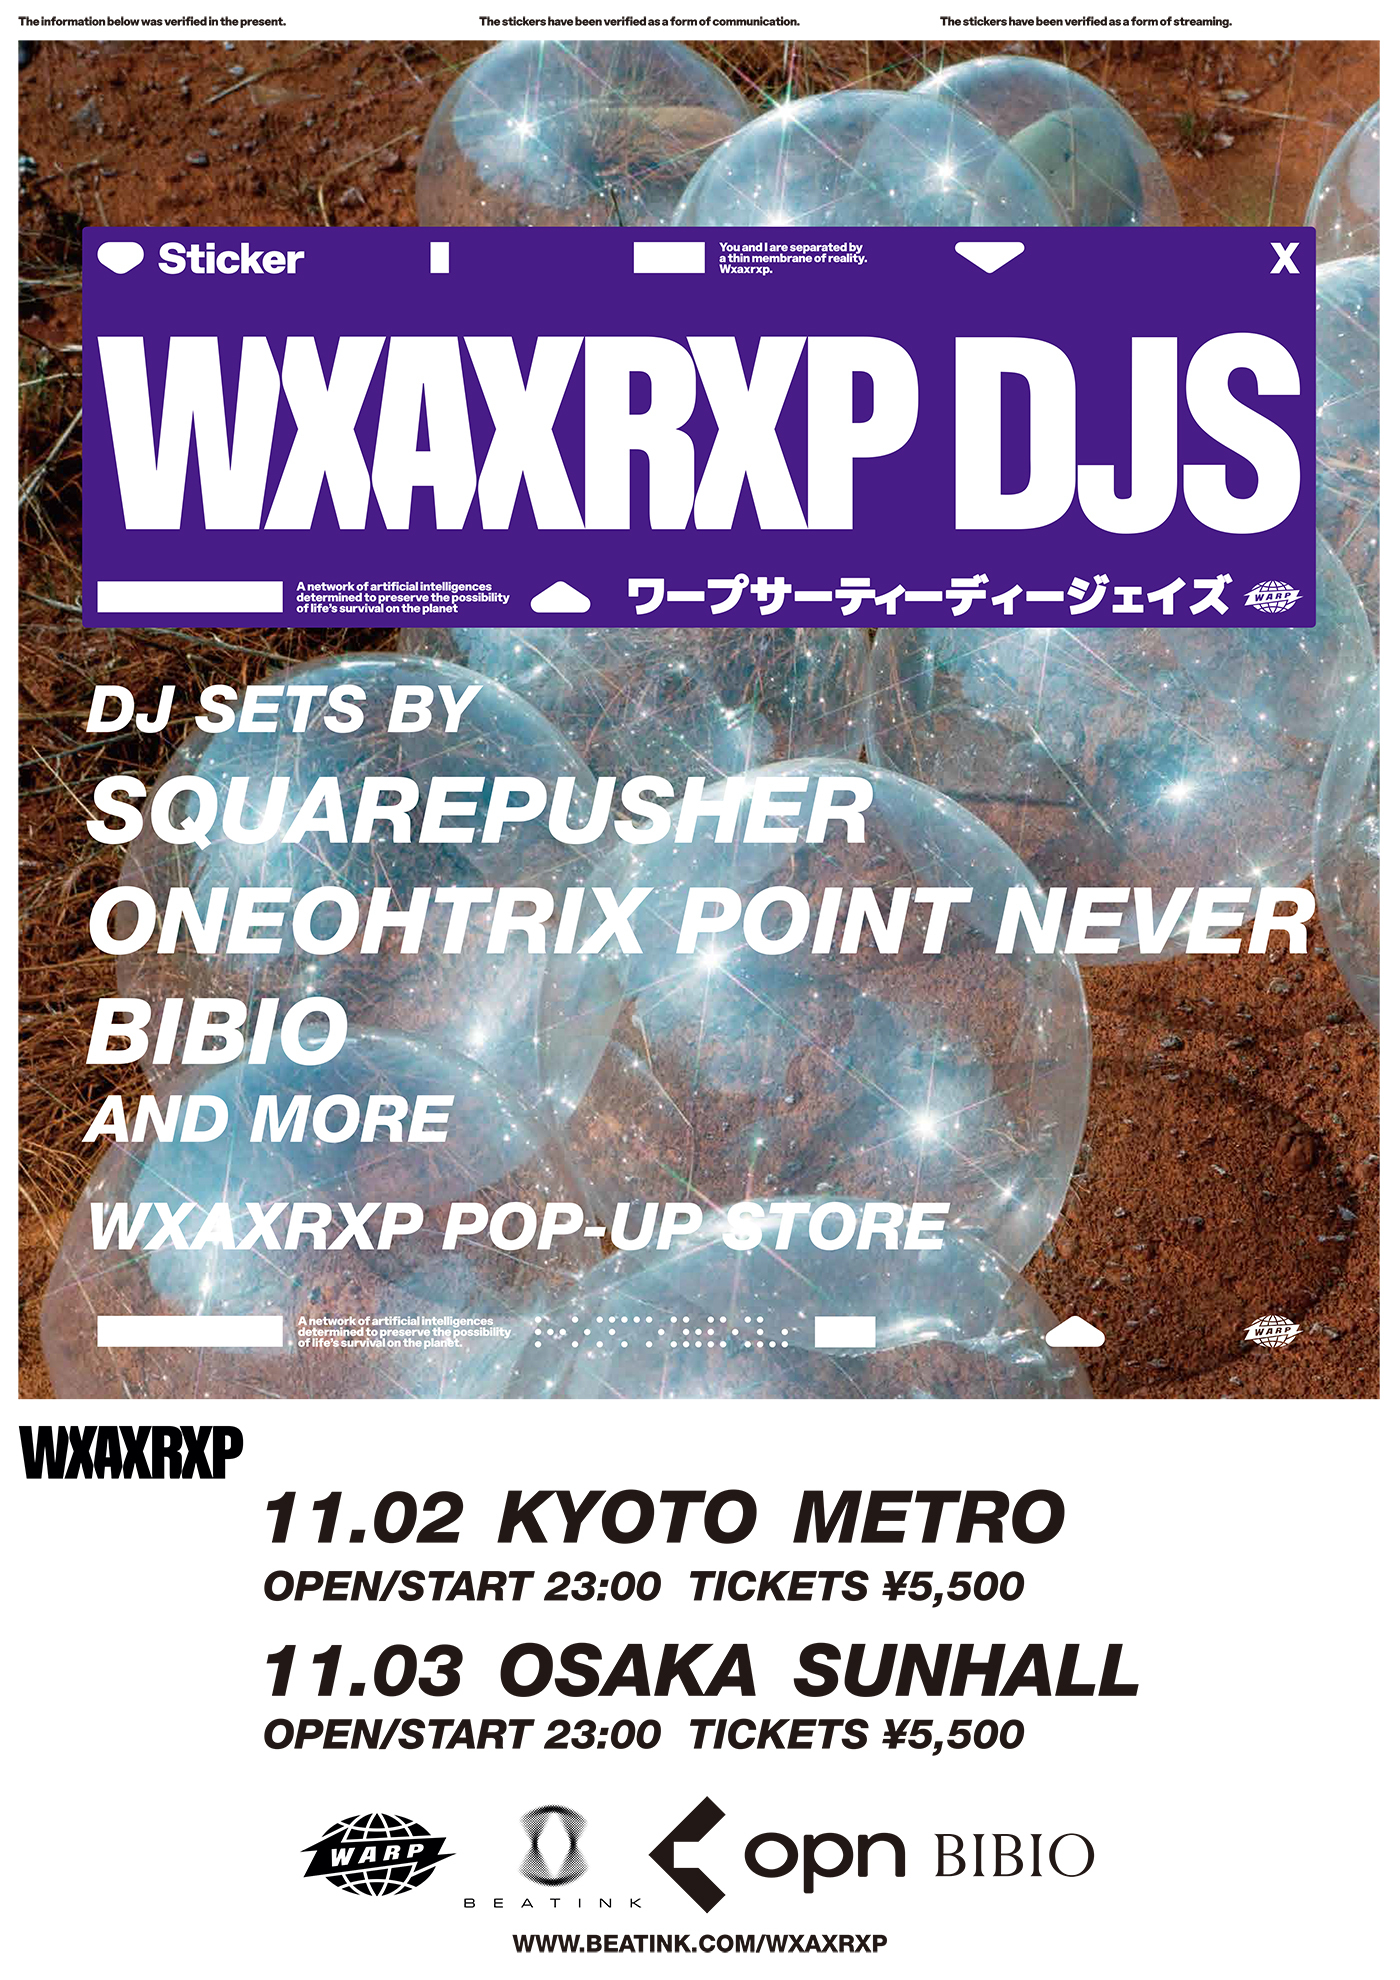 『WXAXRXP DJS』関西